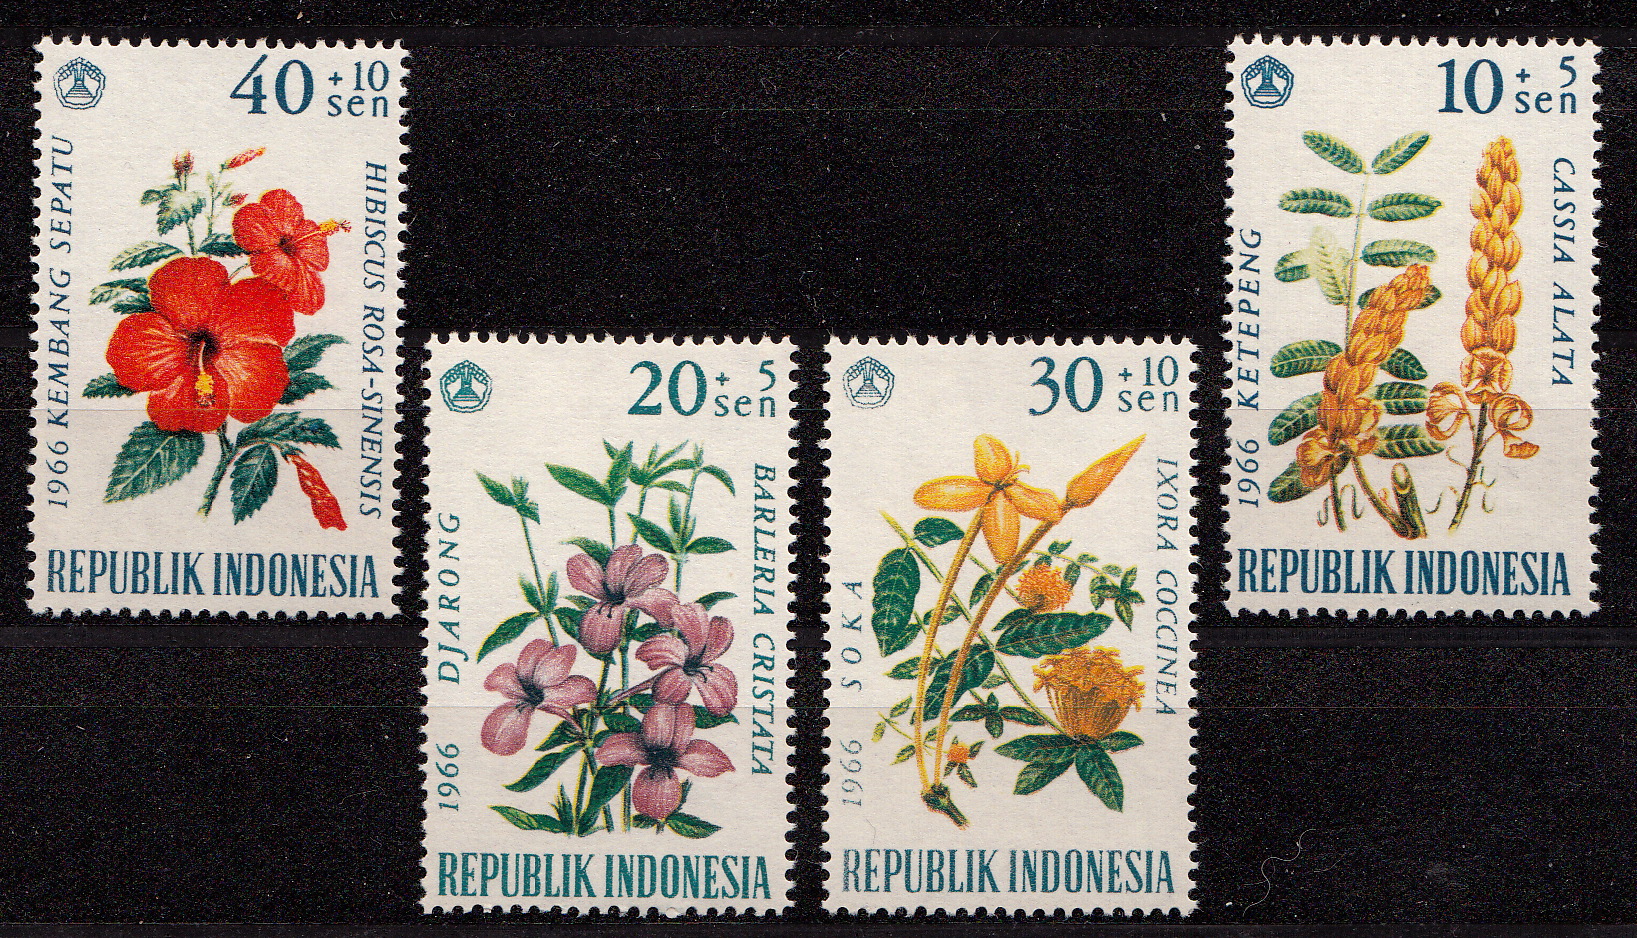 INDONESIA francobolli serie completa nuova Yvert e Tellier 440/3